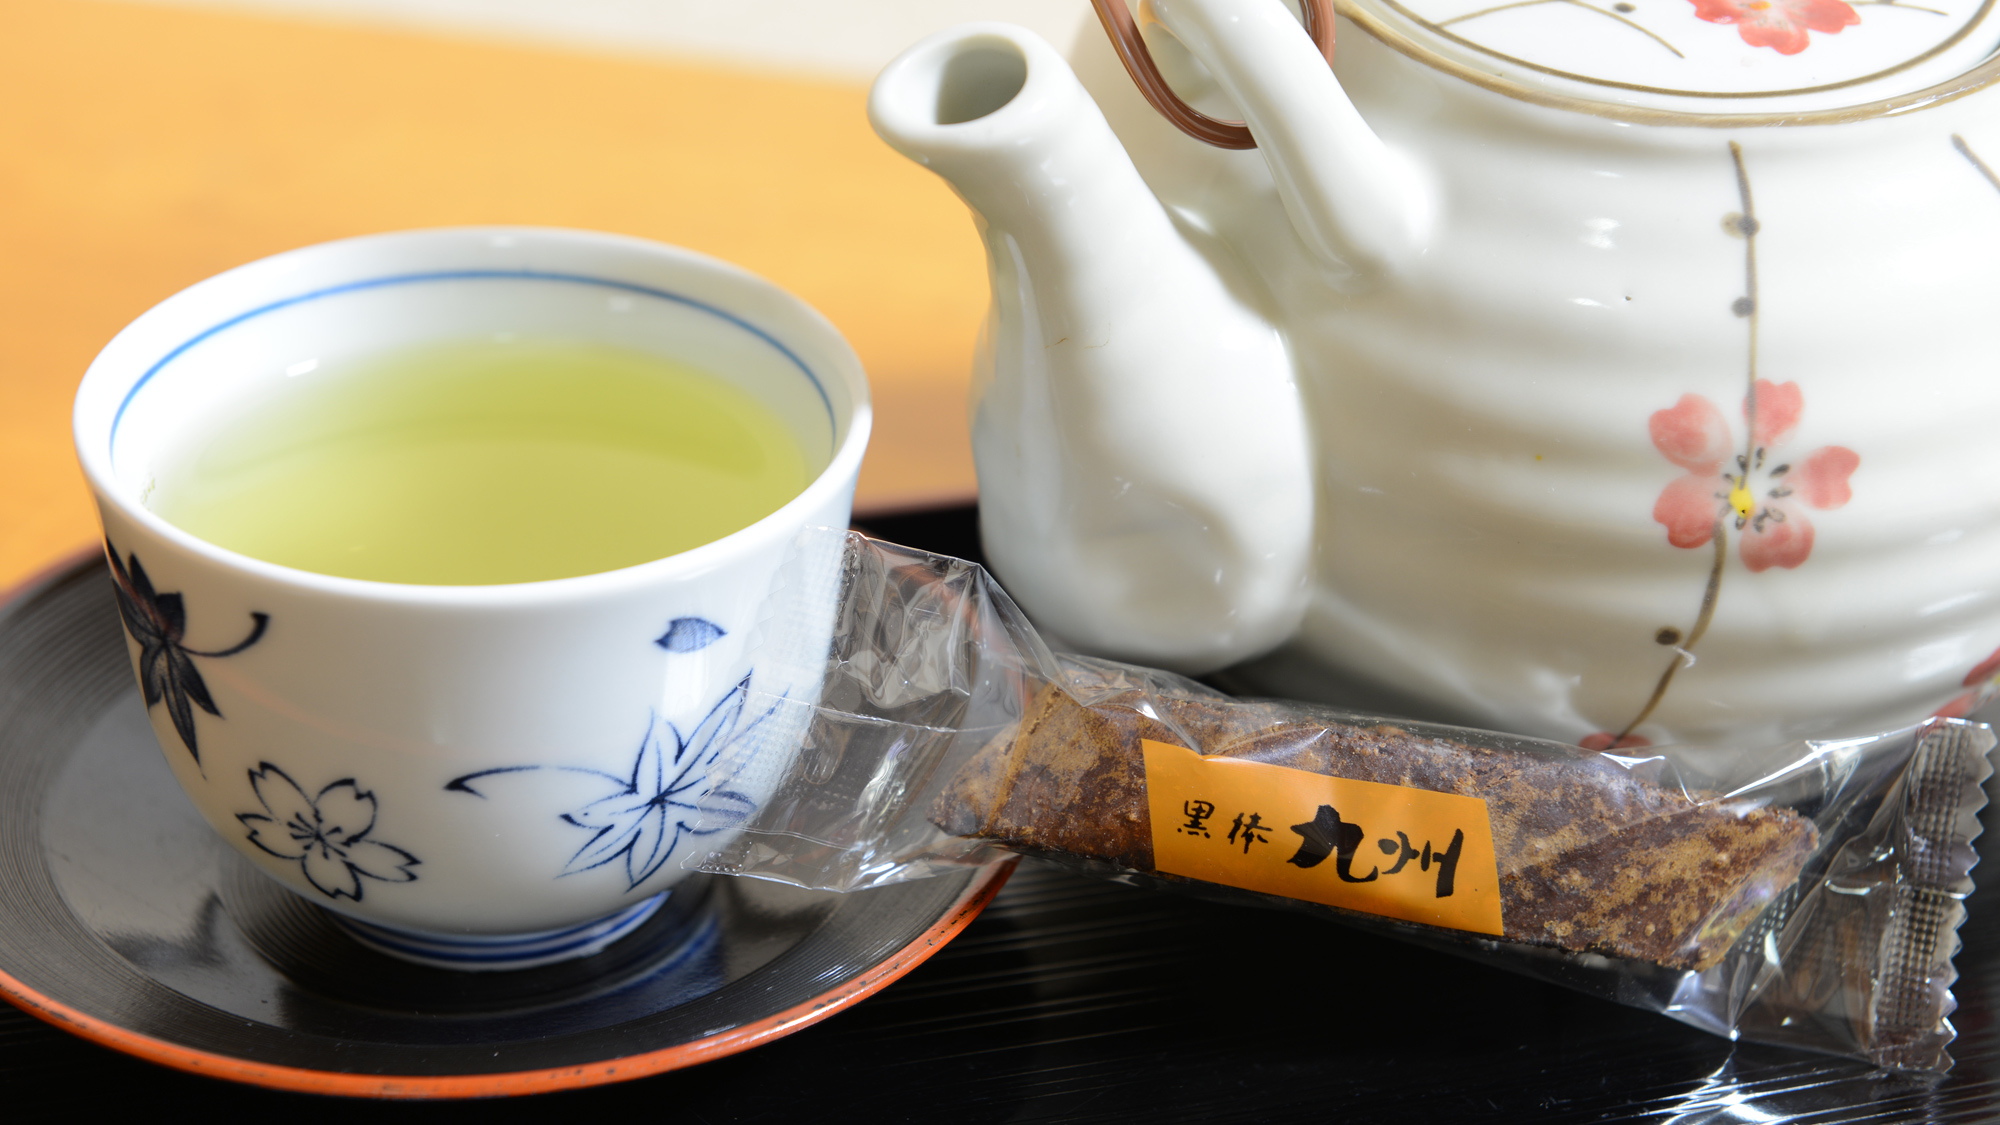 *【客室一例】美味しいお茶と鹿児島のお菓子をご用意。入浴前のお茶とお菓子は健康にも◎